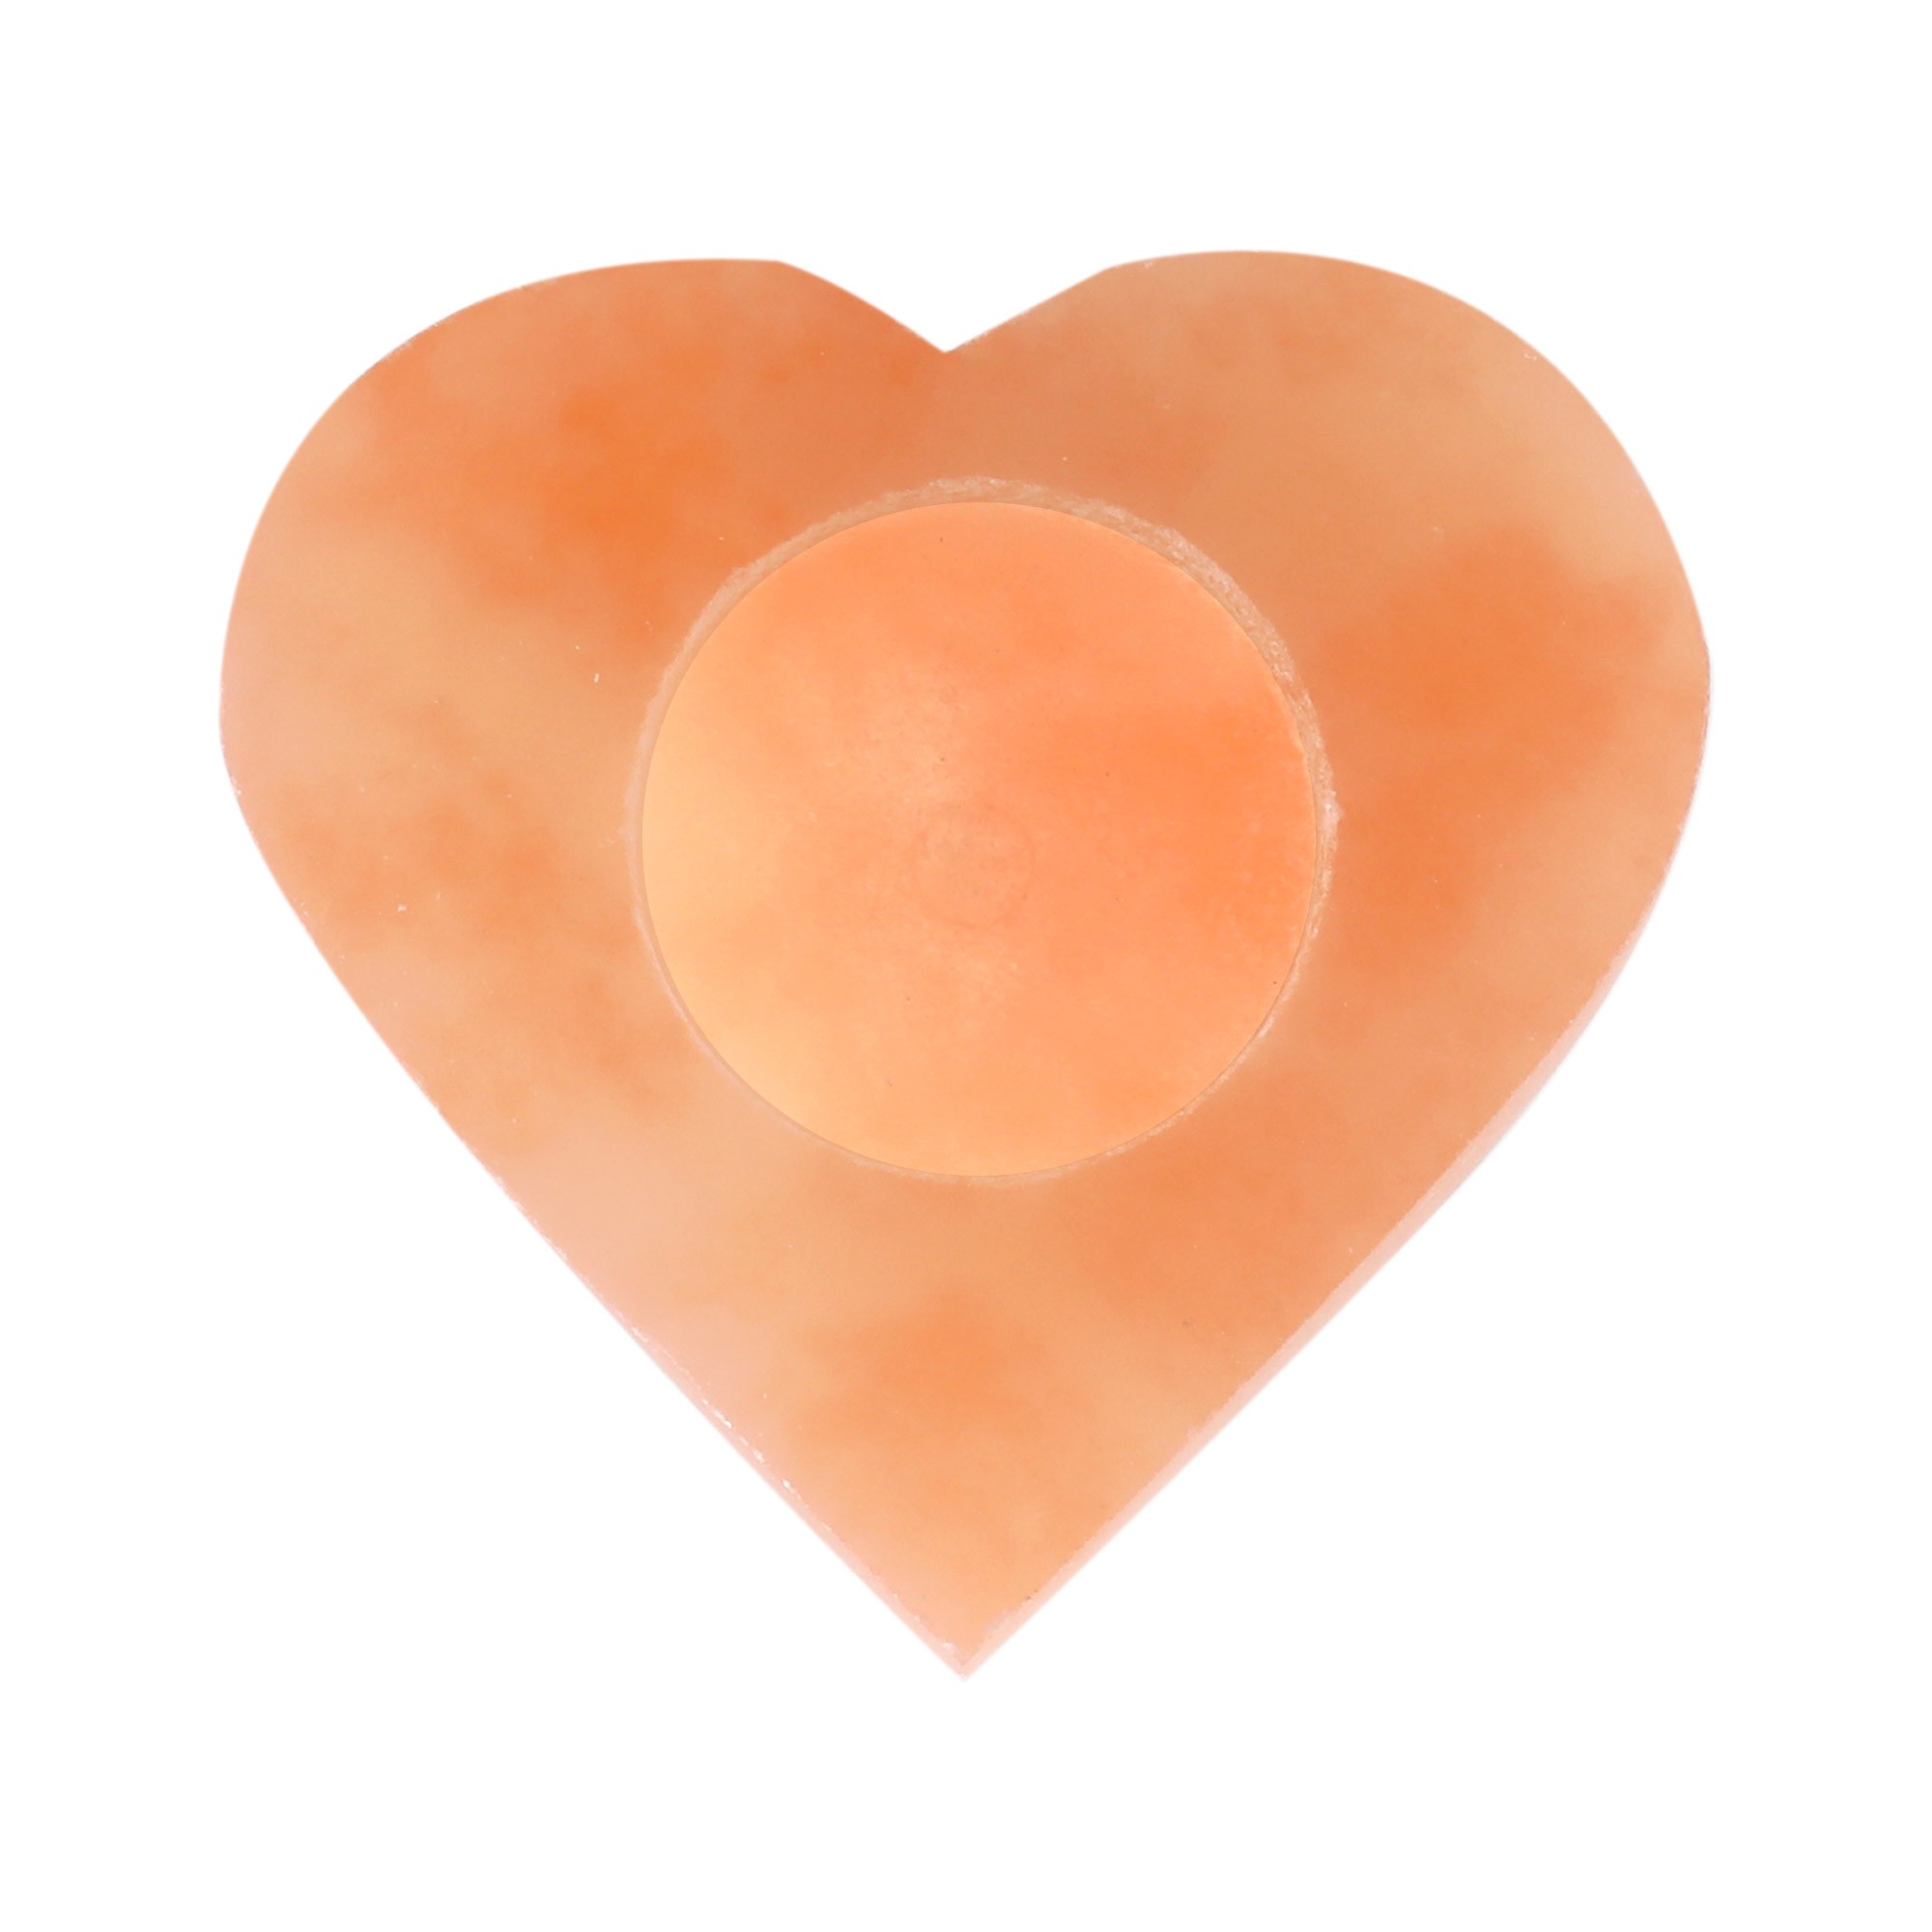 Porta velas "Coração" esculpidos  em Selenita laranja ou branca